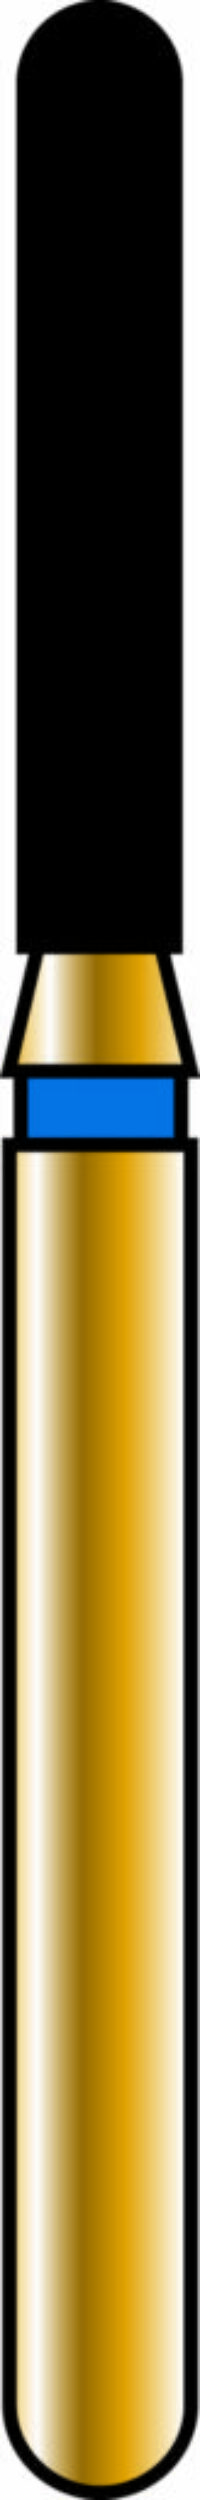 Round End Cylinder 14-8mm Gold Diamond Bur